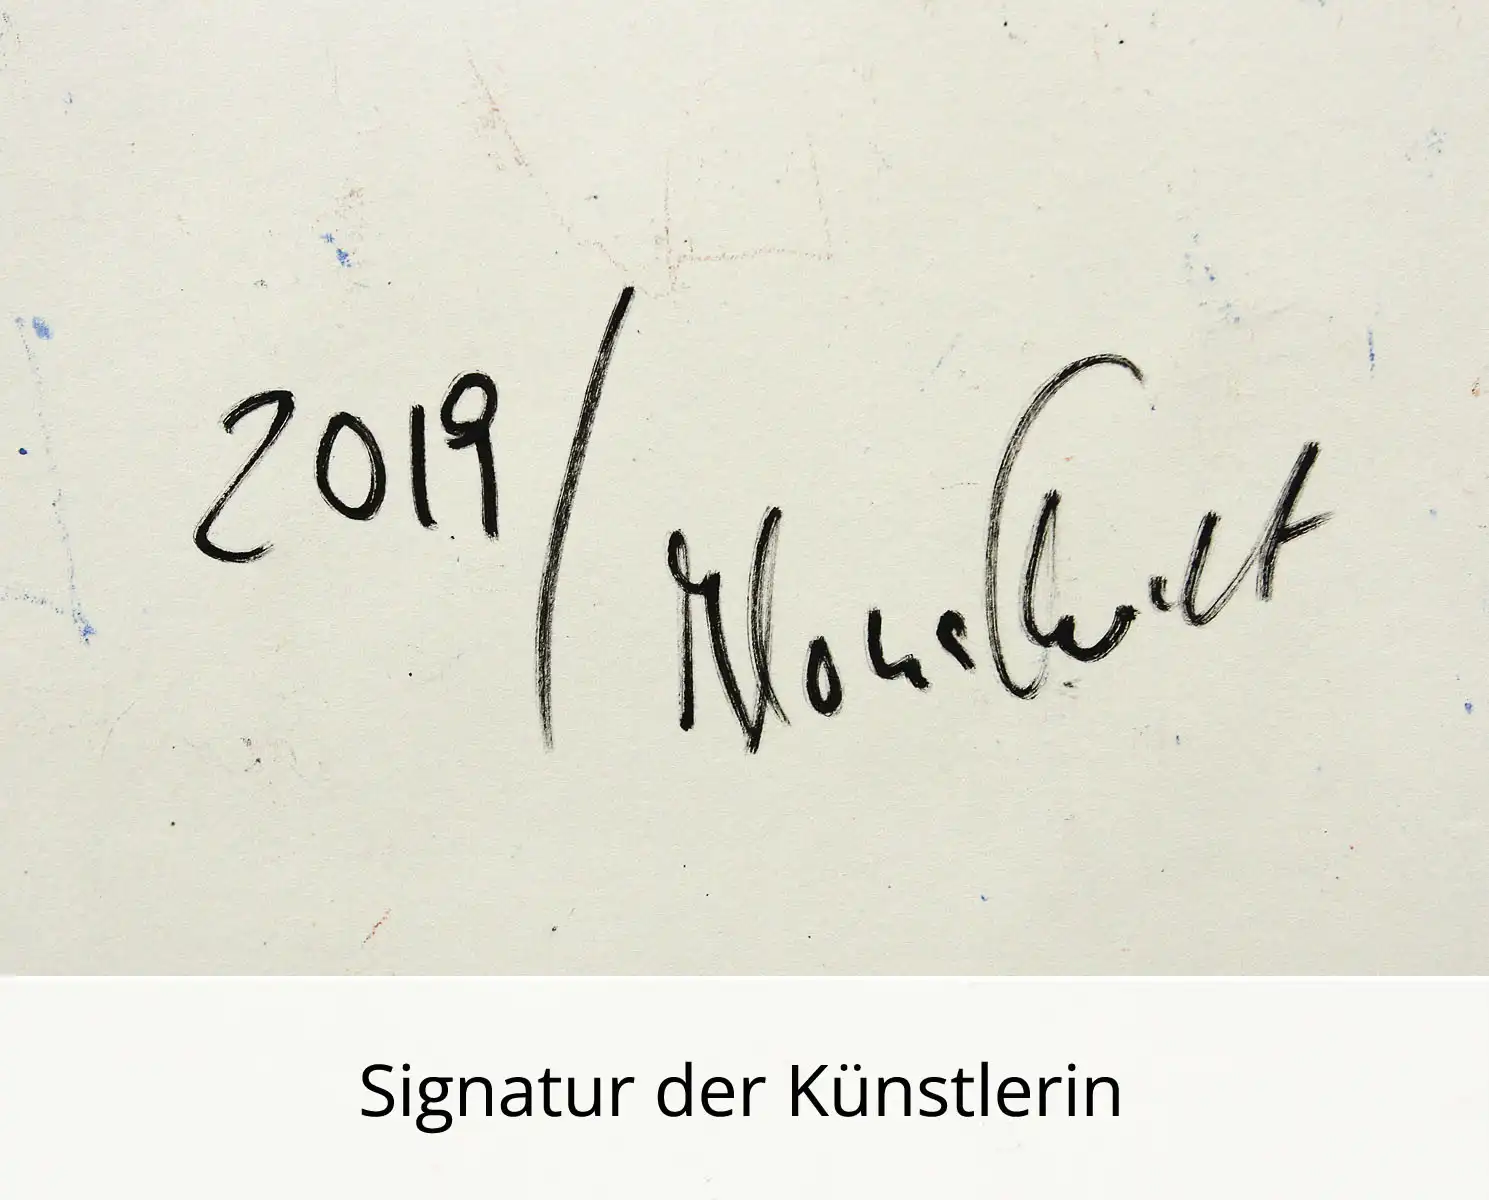 I. Schmidt: "Stadtkatze", zeitgenössische Grafik/Malerei, Original/Unikat